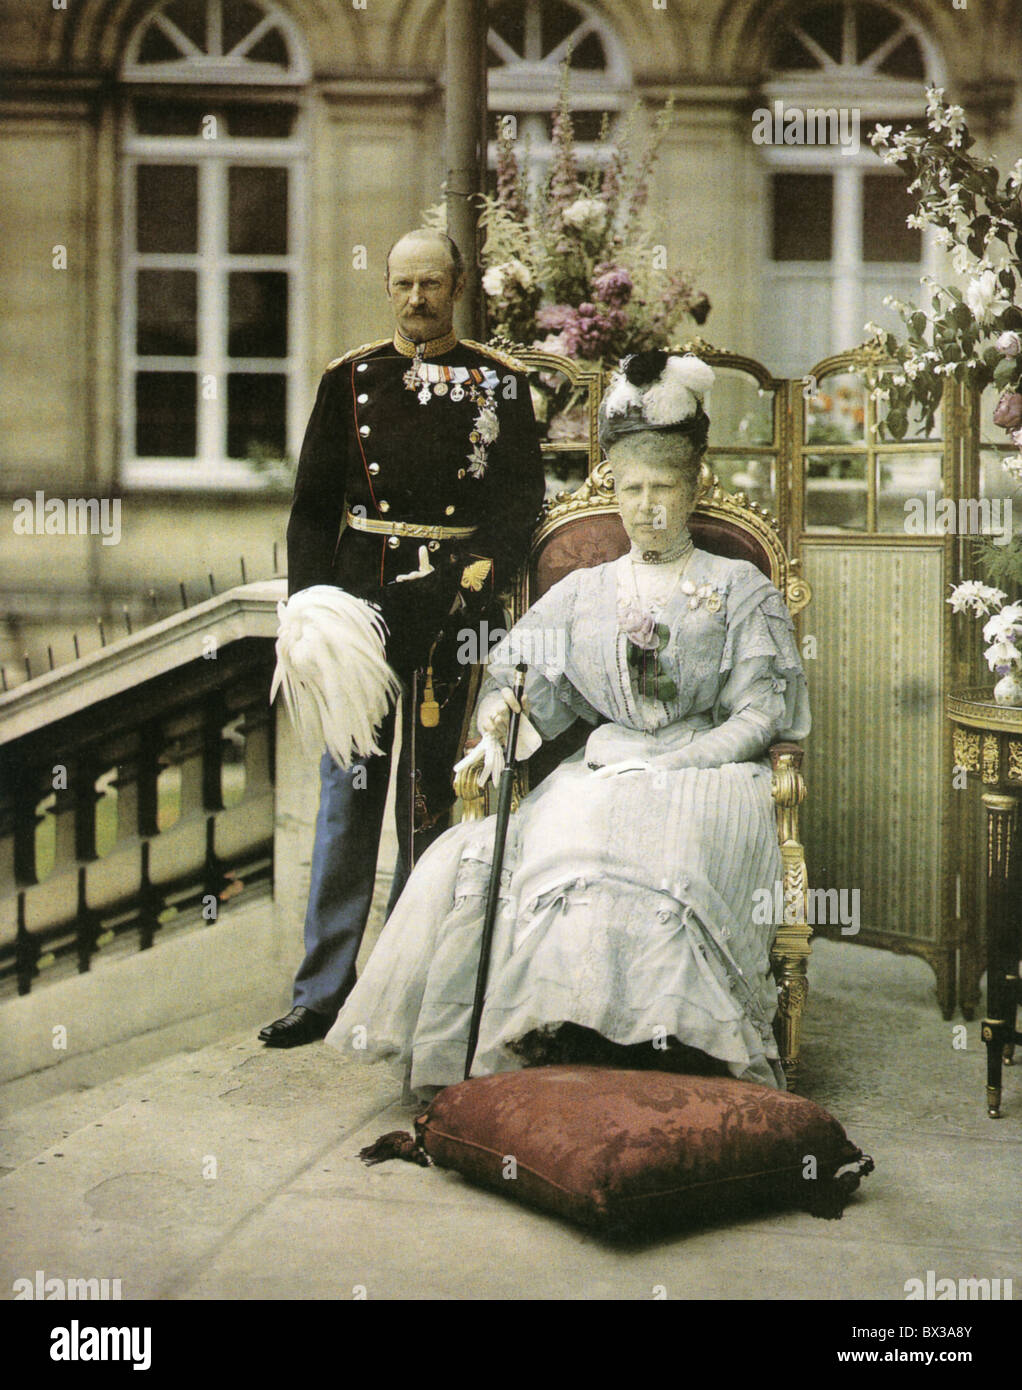 DÄNISCHE König FREDERICK VIII und Frau Louise von Schweden im Juni 1907 von Léon Gimpel fotografiert. Siehe Beschreibung unten Stockfoto